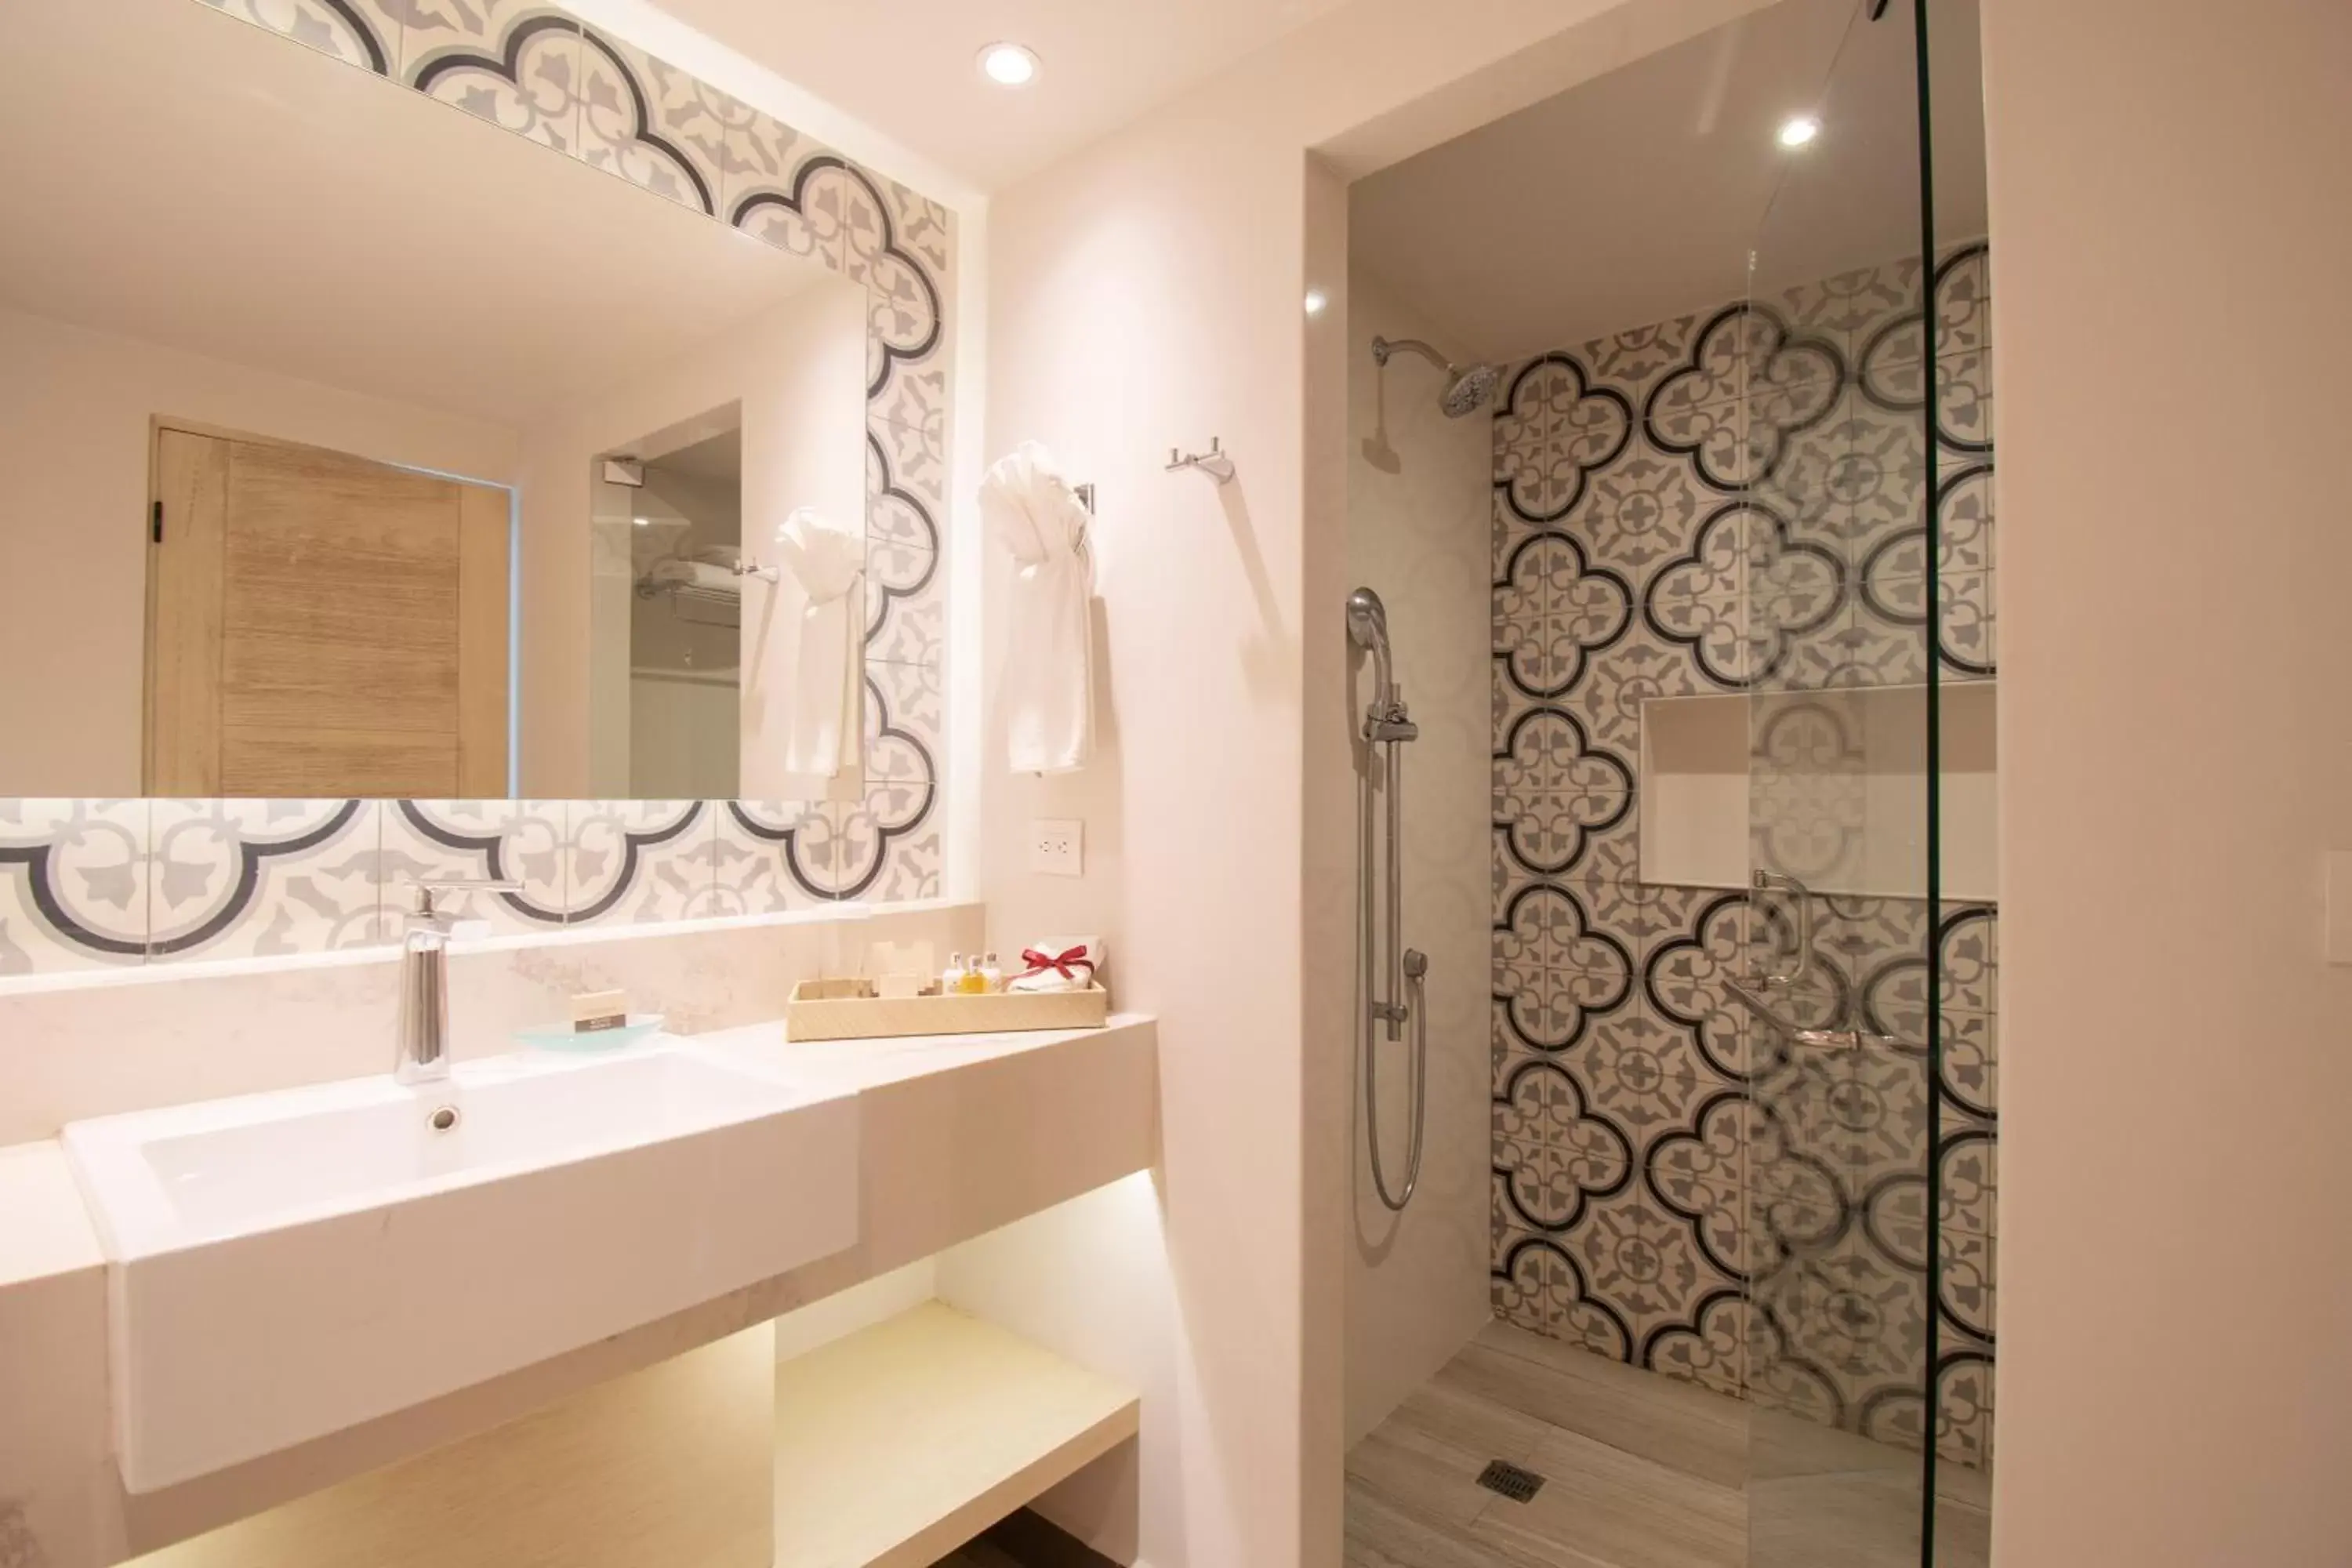 Shower, Bathroom in Pueblo Bonito Mazatlan Beach Resort - All Inclusive